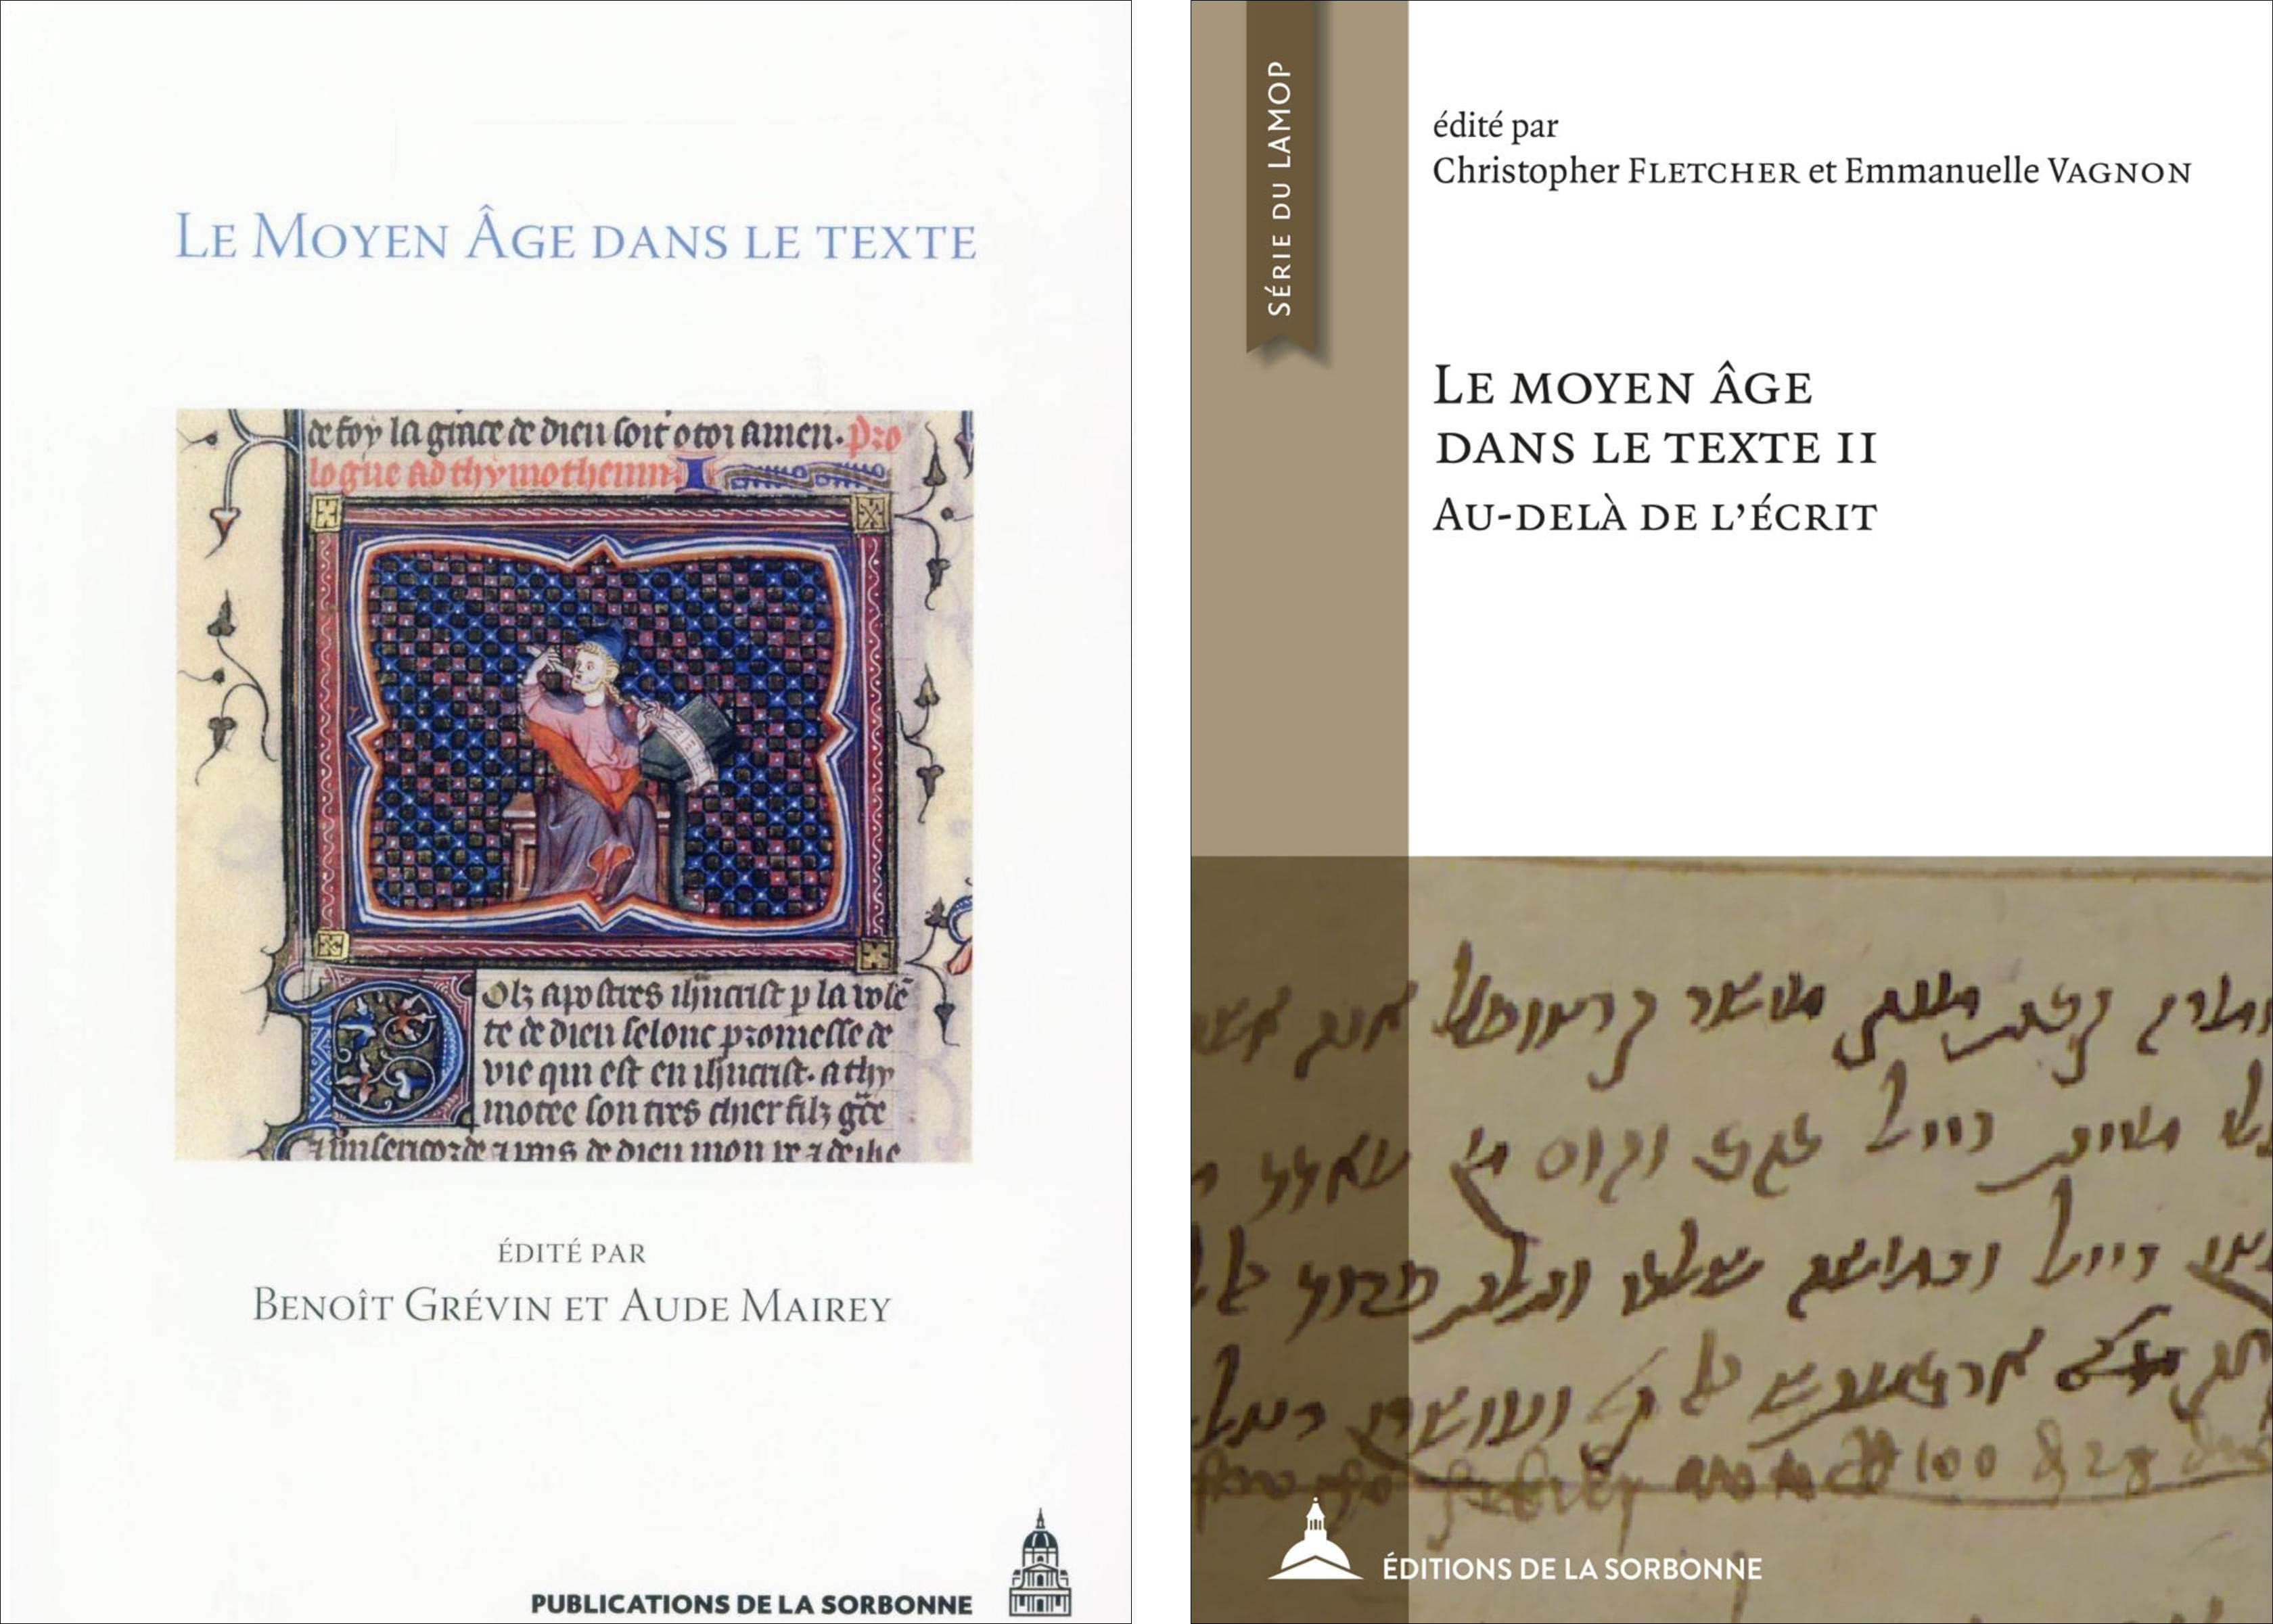 Le Moyen Âge dans le texte (1 et 2)